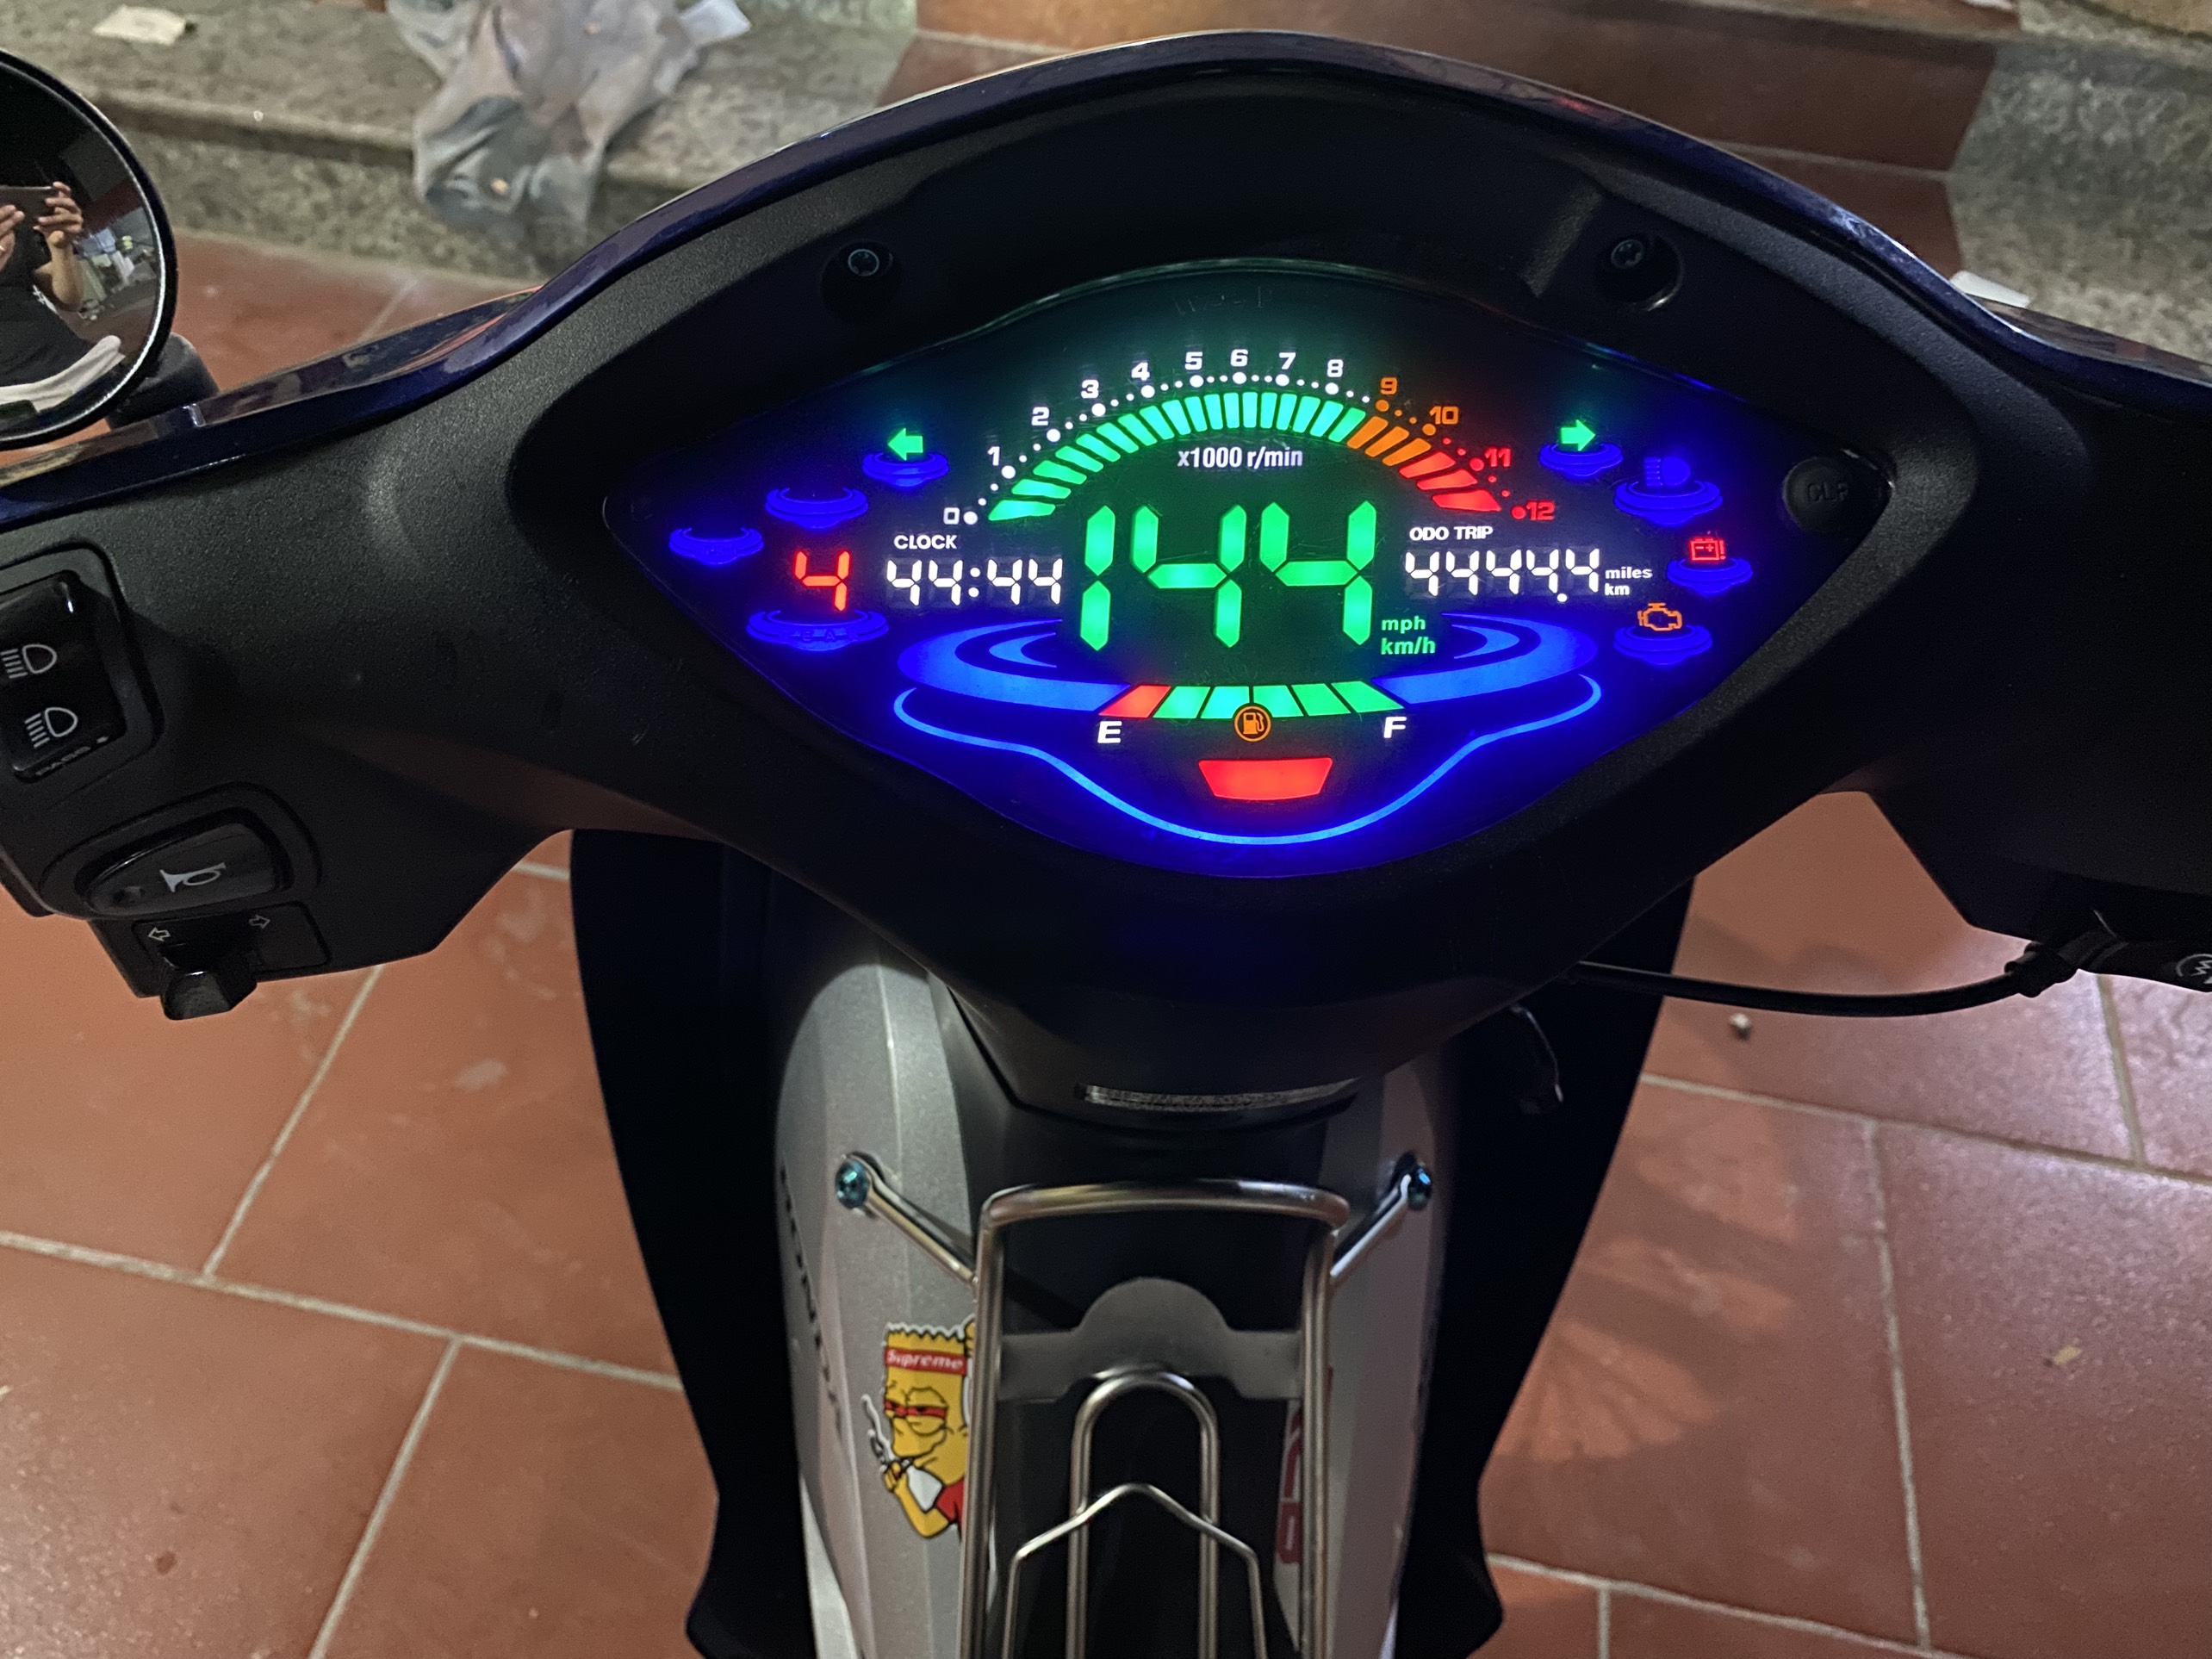 Đồng hồ điện tử 2022 PLUS gắn trên chiếc xe máy Wave sẽ khiến cho chiếc xe của bạn trở nên phong cách và hiện đại hơn bao giờ hết. Bạn sẽ được tận hưởng tất cả những thông số về vận tốc và đồng hồ thời gian một cách rõ ràng và dễ dàng hơn khi lái xe. Hãy xem hình để cảm nhận rõ hơn vẻ đẹp của chiếc đồng hồ độ này.